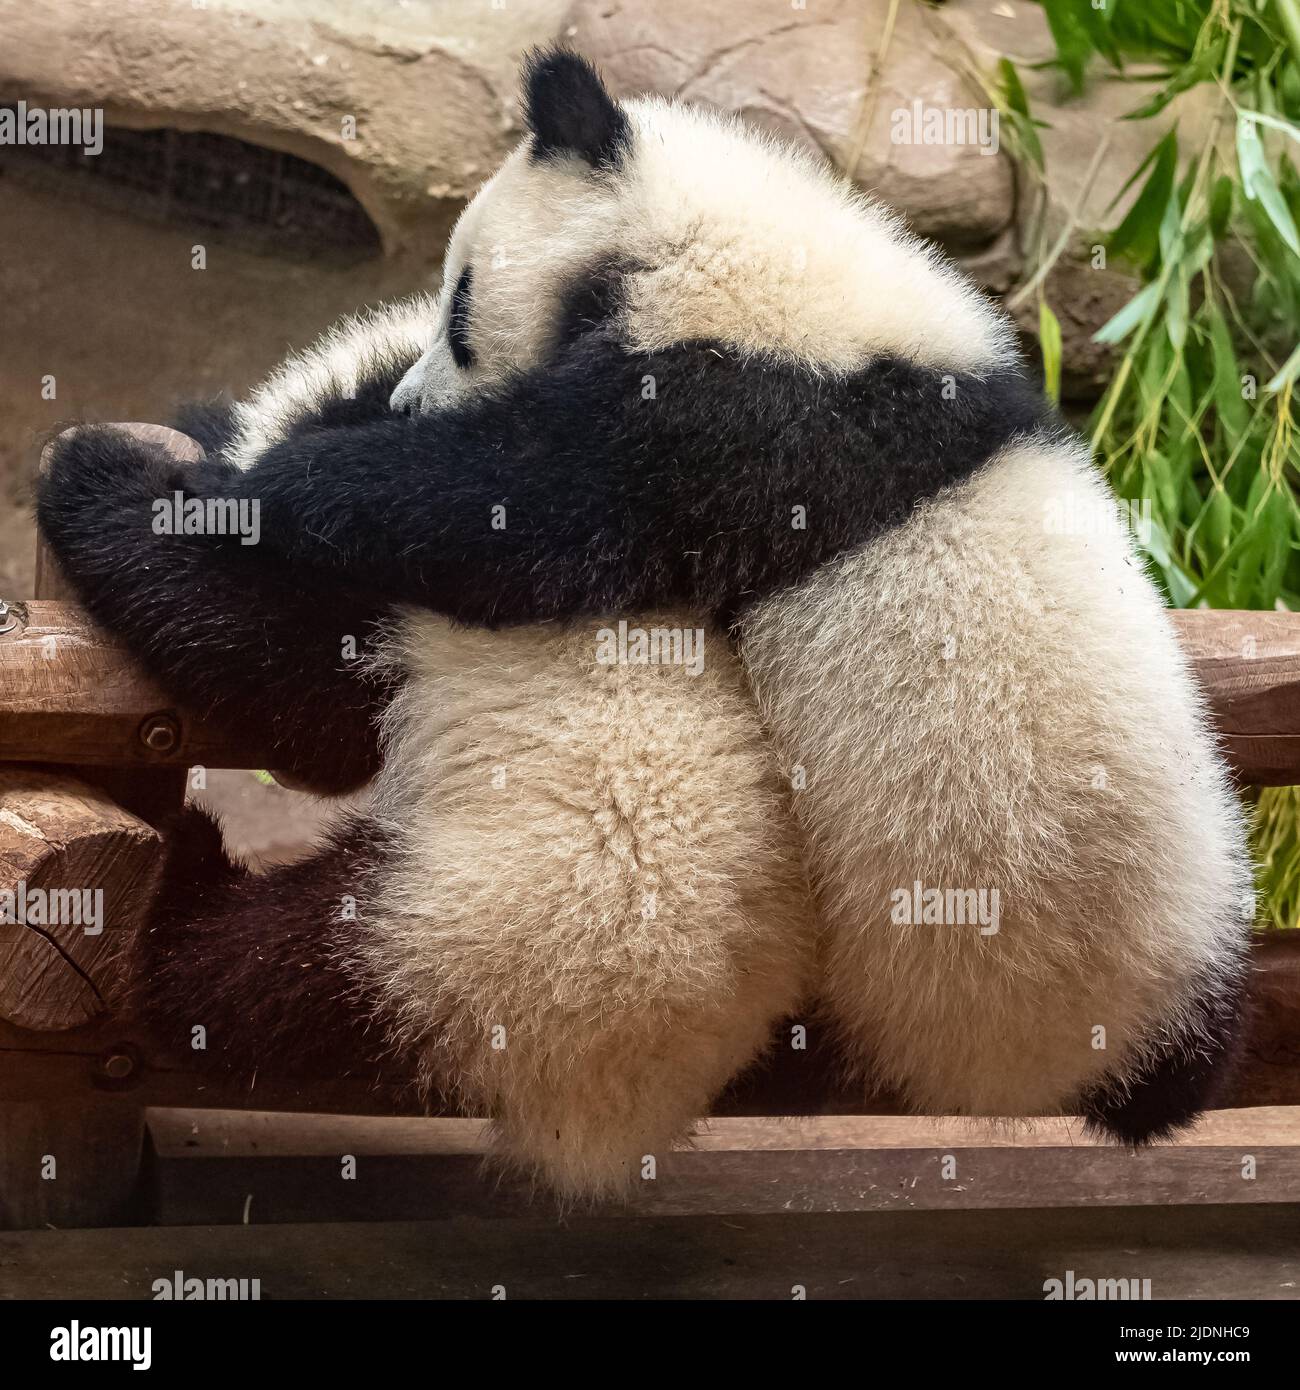 Oso panda bebé jugando